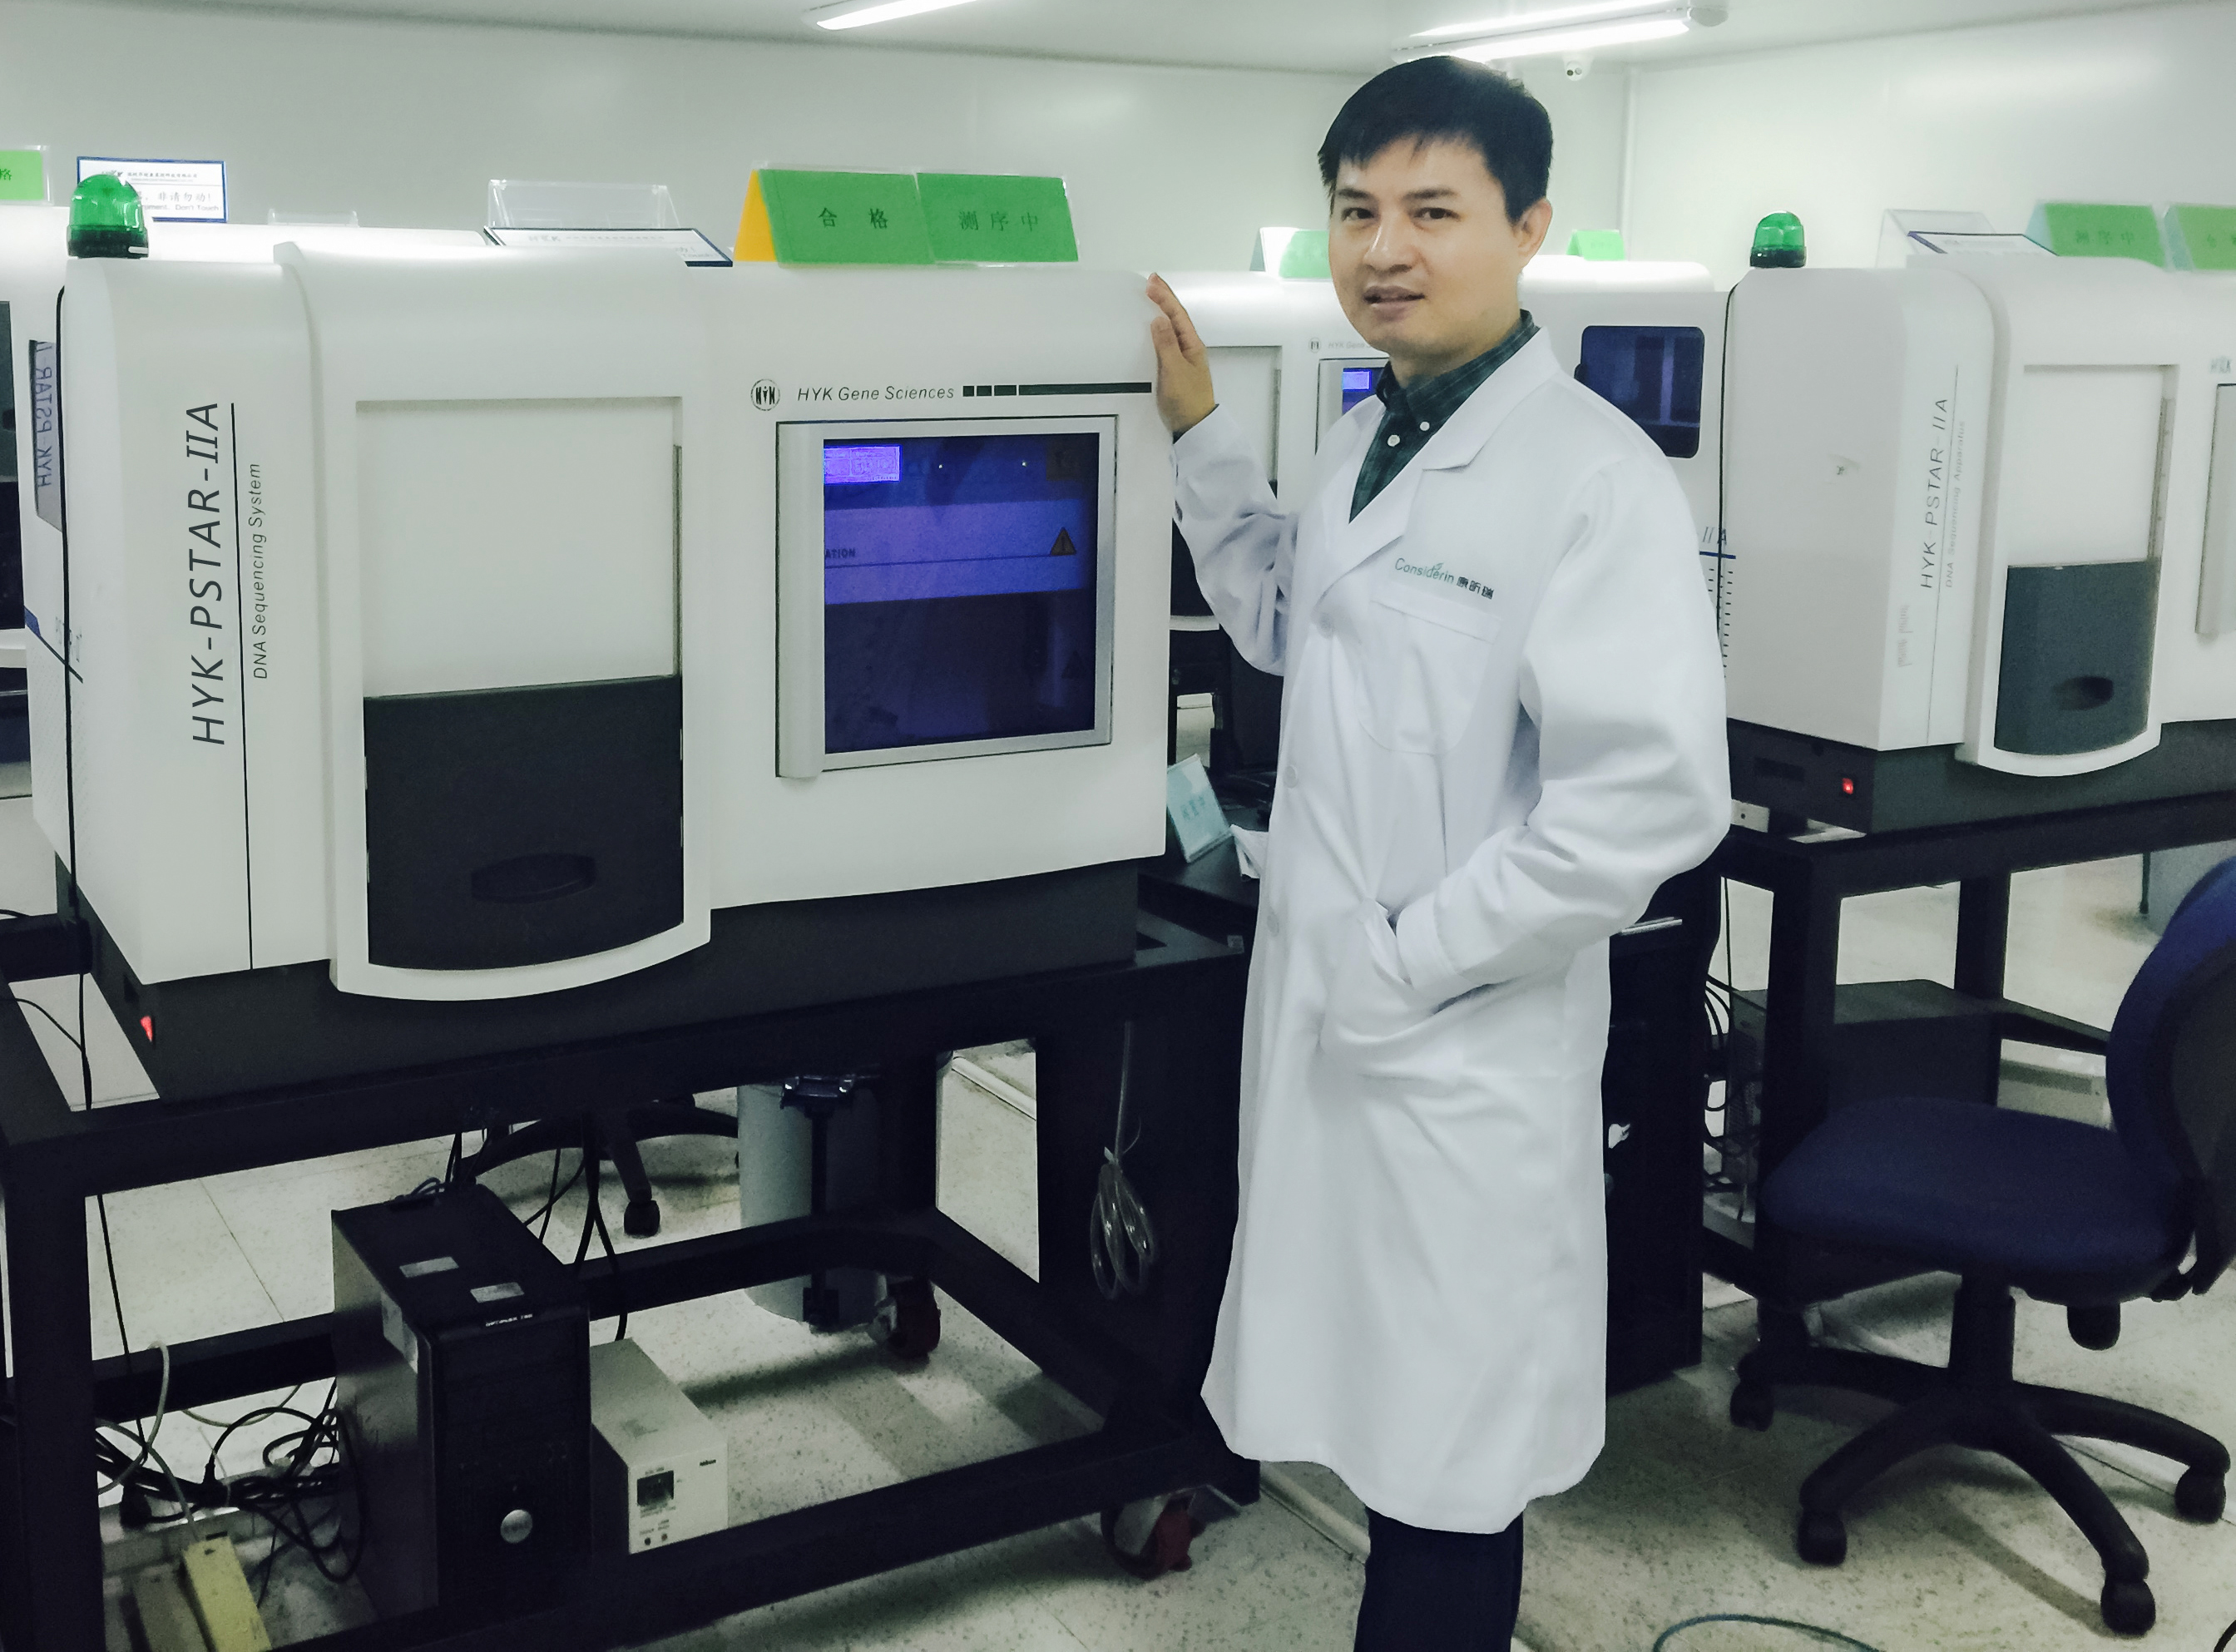 创新基因测序平台  助推中国精准医疗 ——科技日报两会专访华因康创始人盛司潼博士